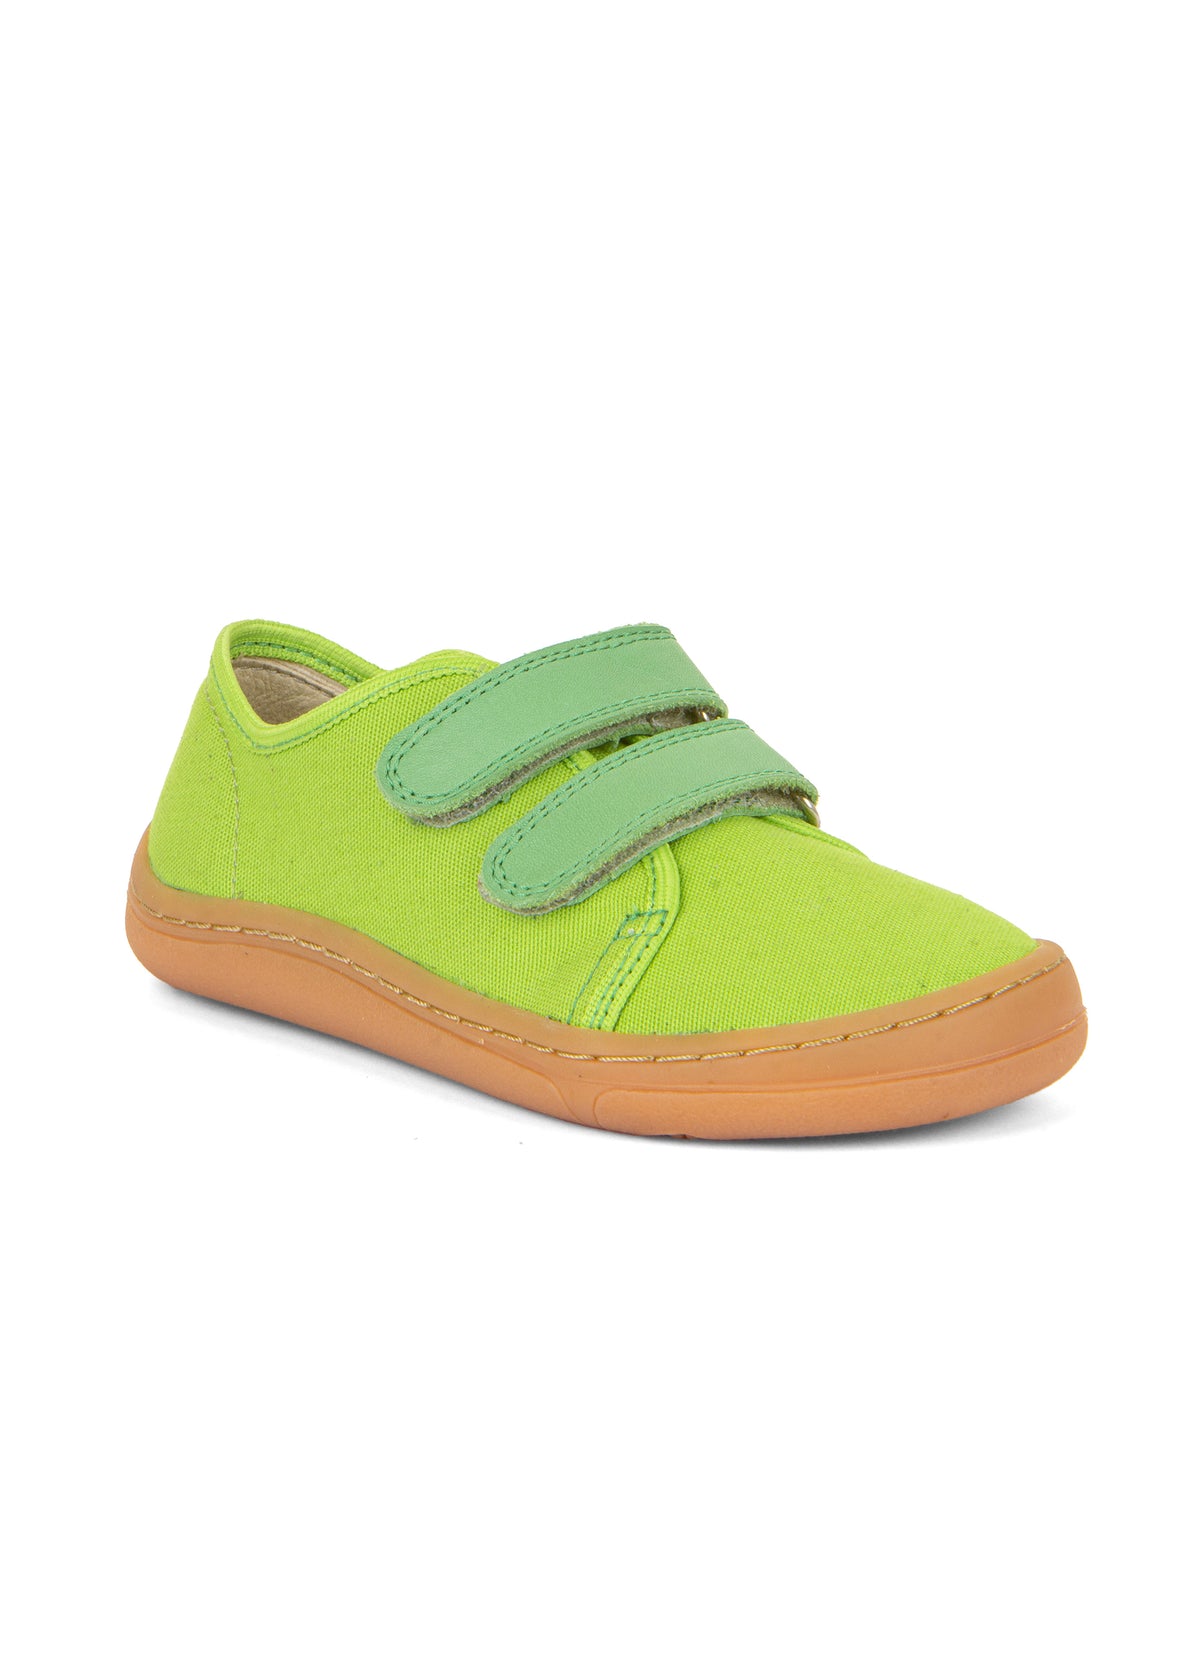 Children's barefoot sneakers - green